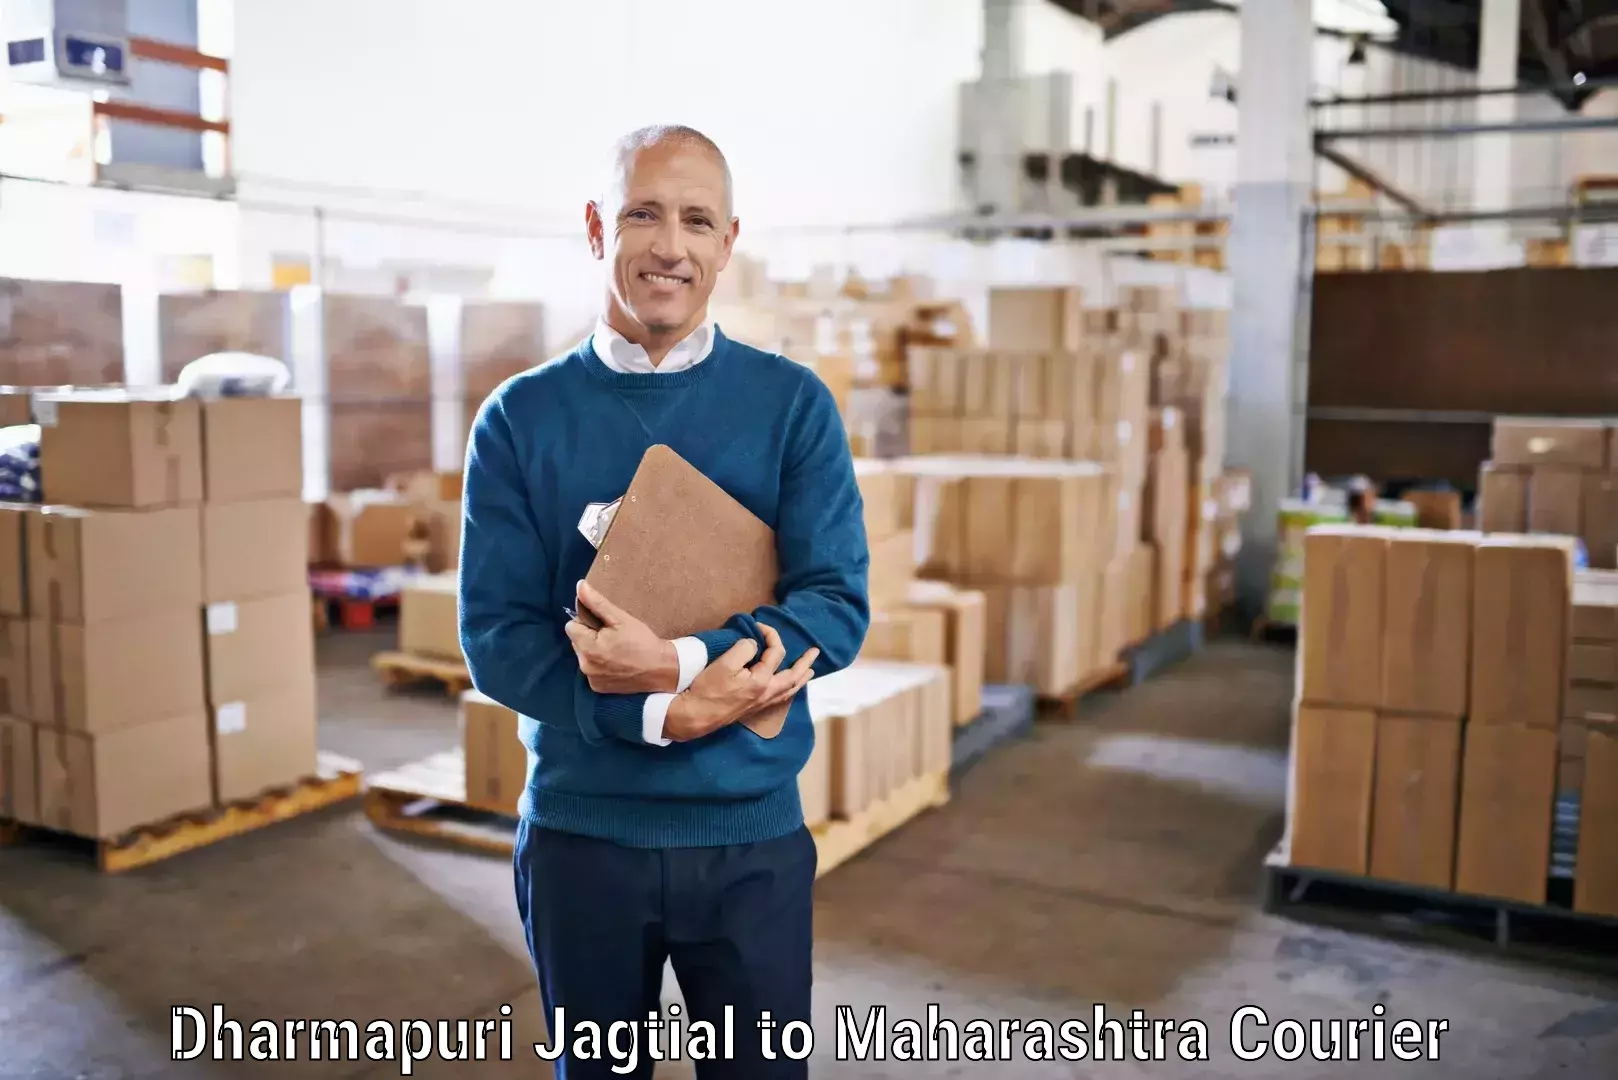 Custom courier rates Dharmapuri Jagtial to Virar